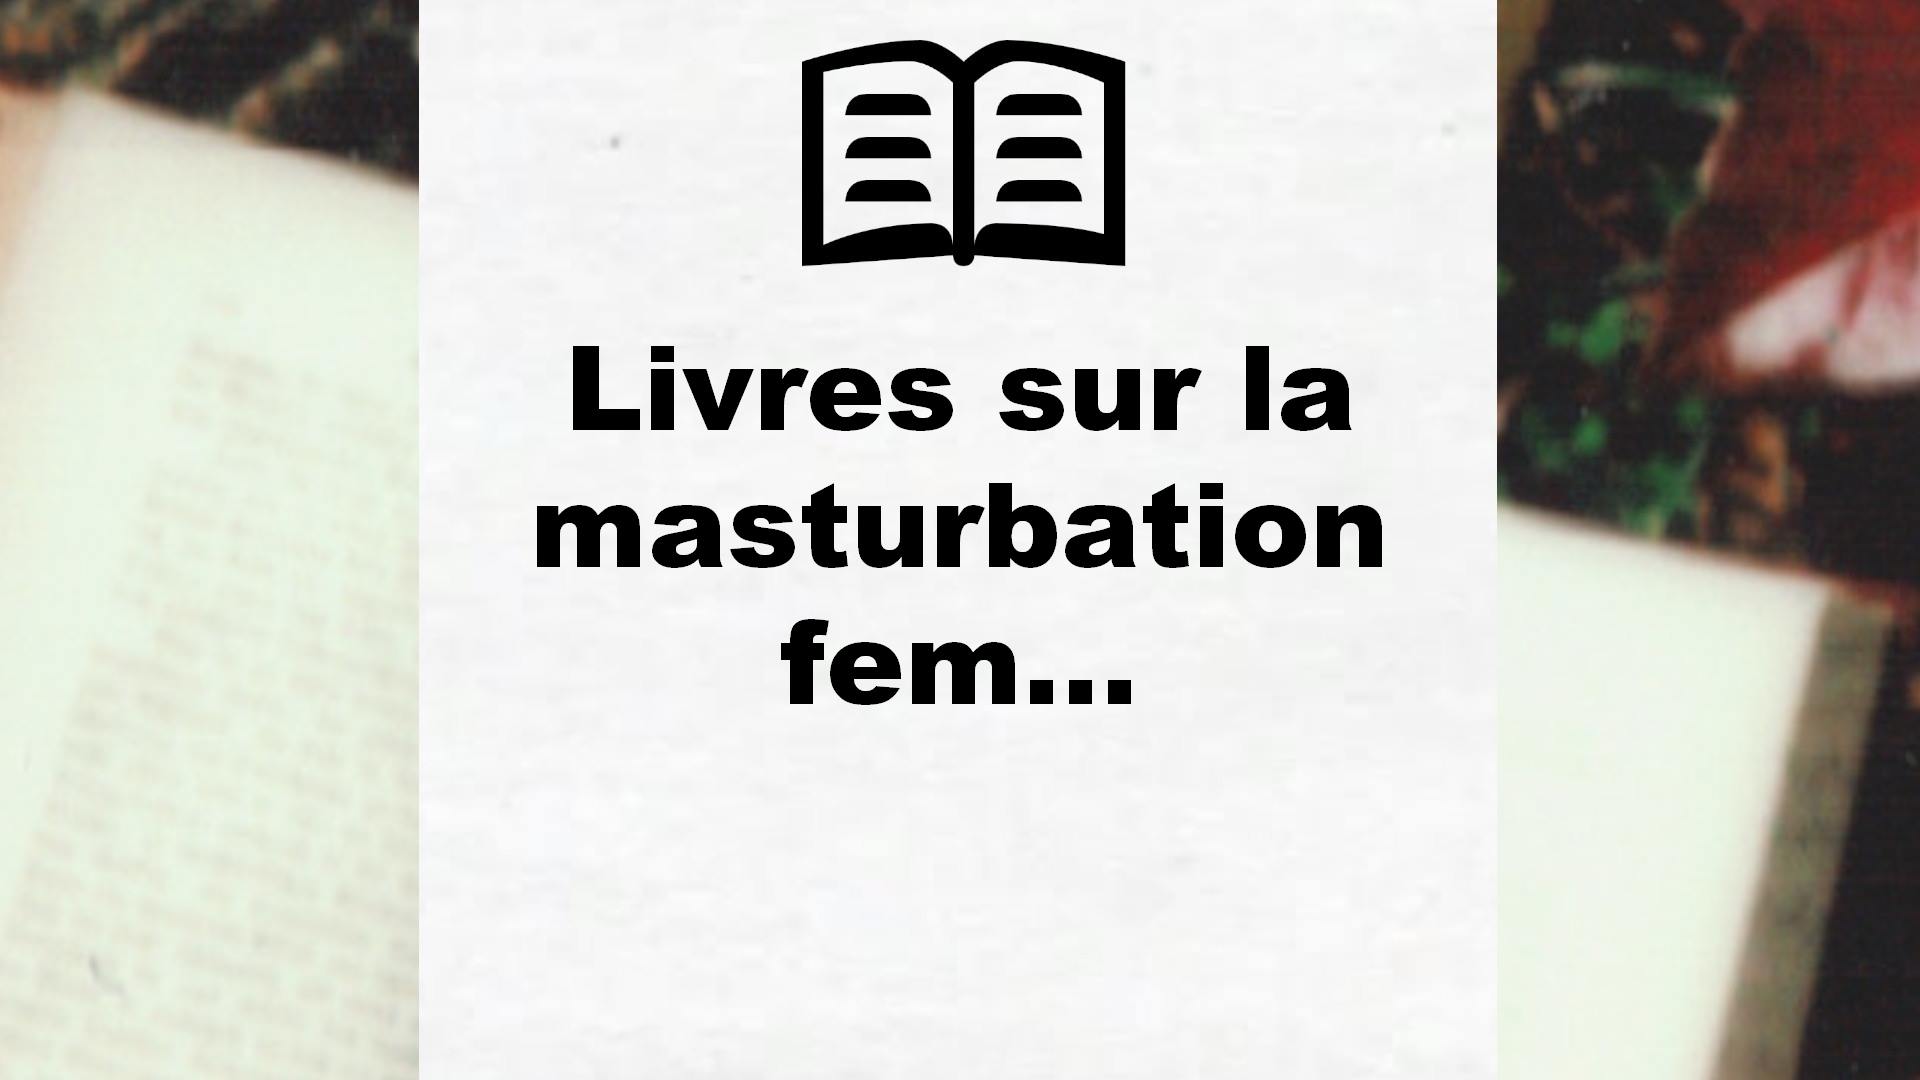 Livres sur la masturbation feminine